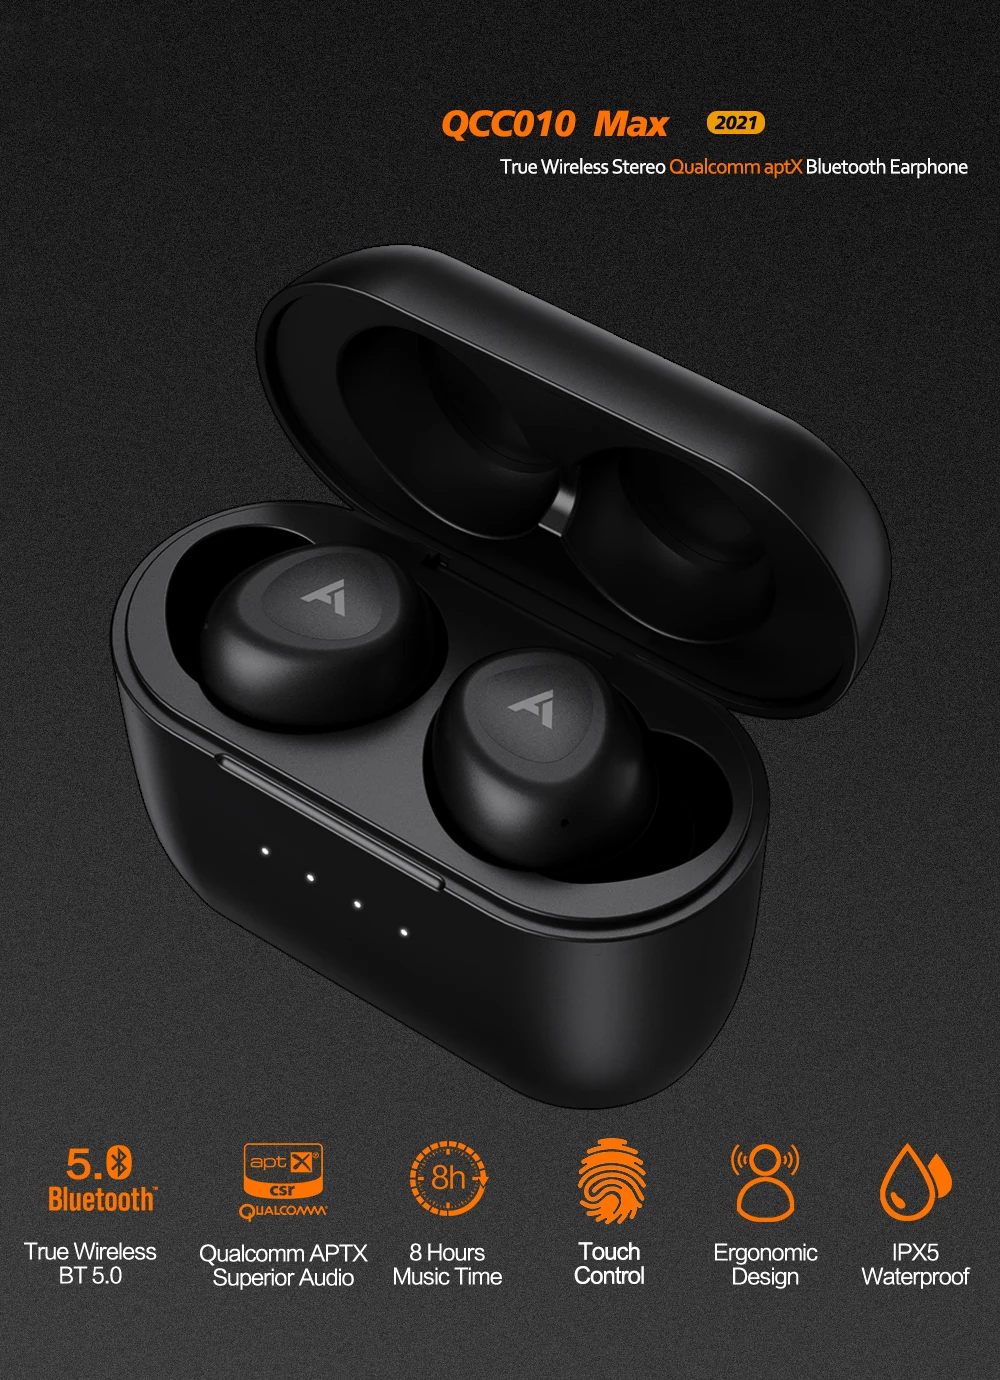 Anomoibuds Aptx Bezdrôtové Slúchadlá Bluetooth Slúchadlá Drôtové Slúchadlá S CVC8.0 Mikrofóny Športové Slúchadlá Bezdrôtové Slúchadlá